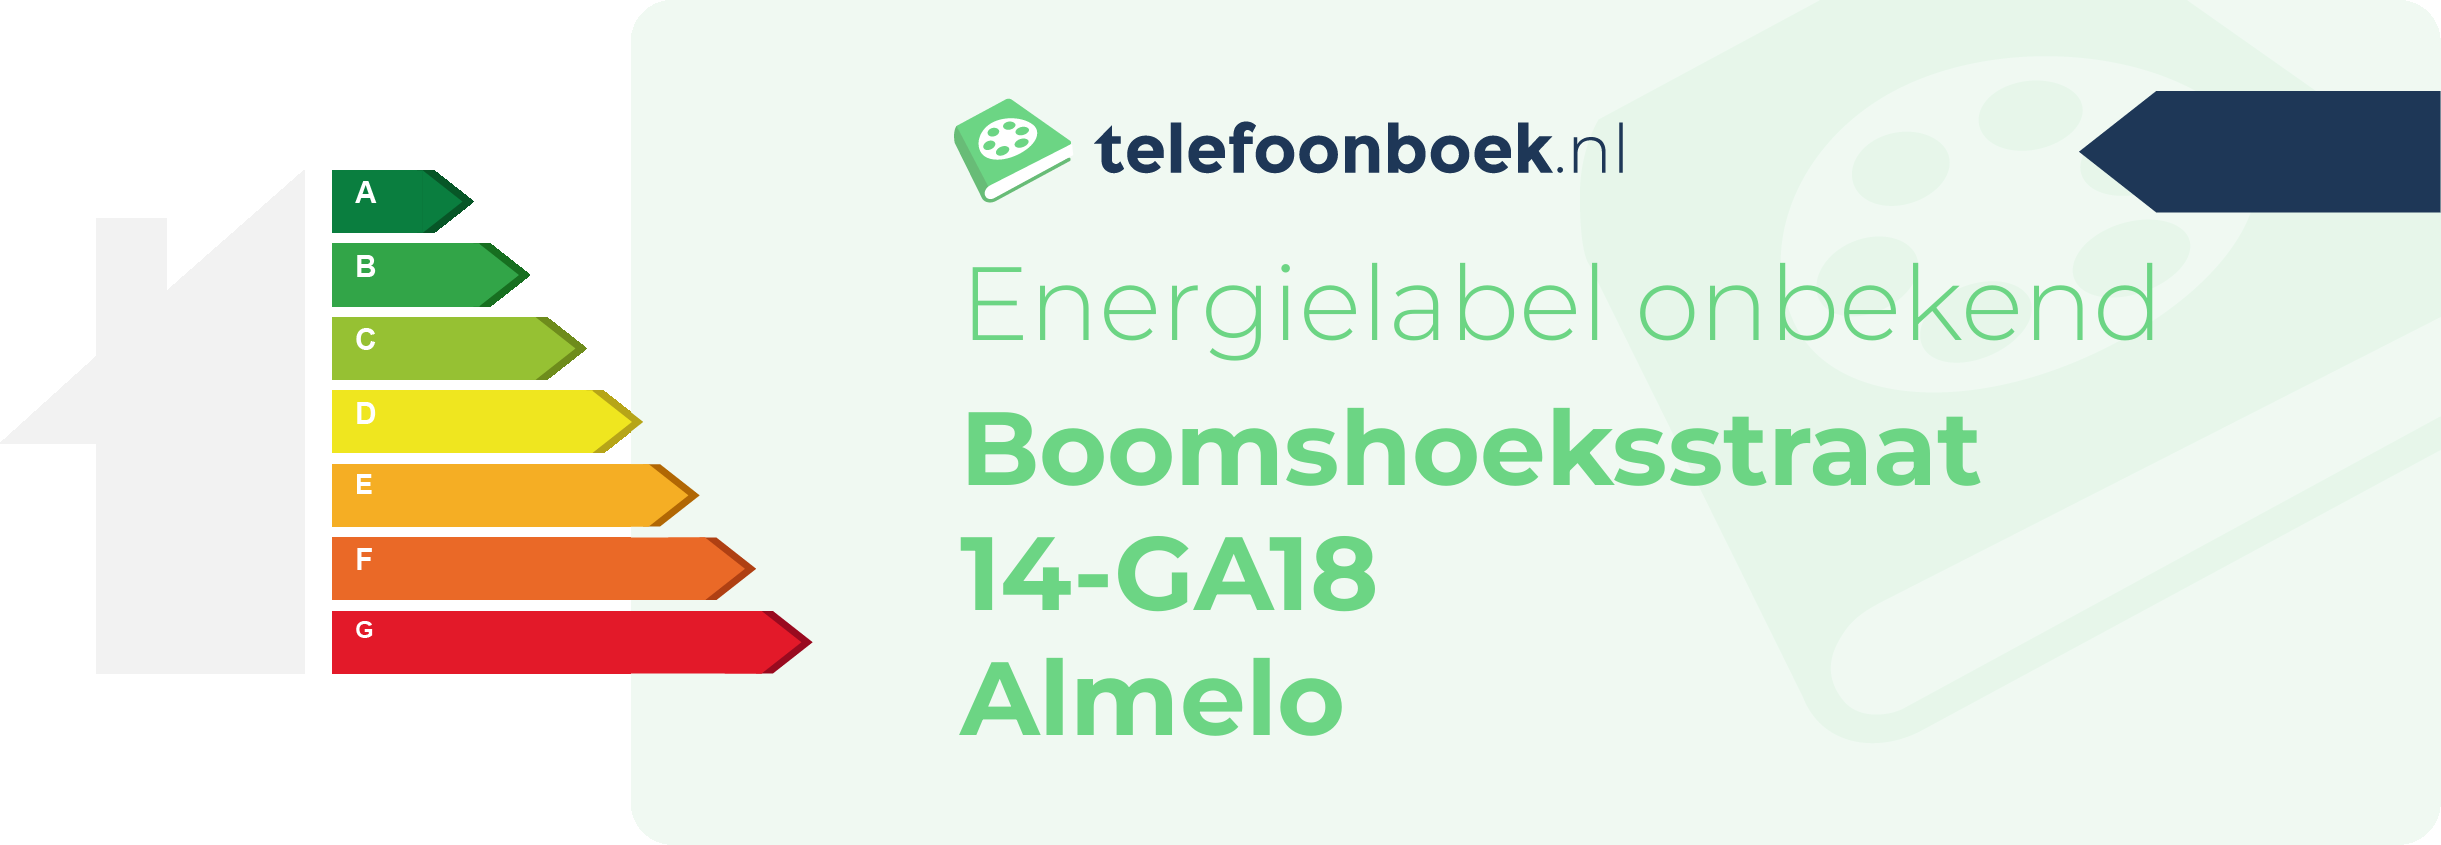 Energielabel Boomshoeksstraat 14-GA18 Almelo